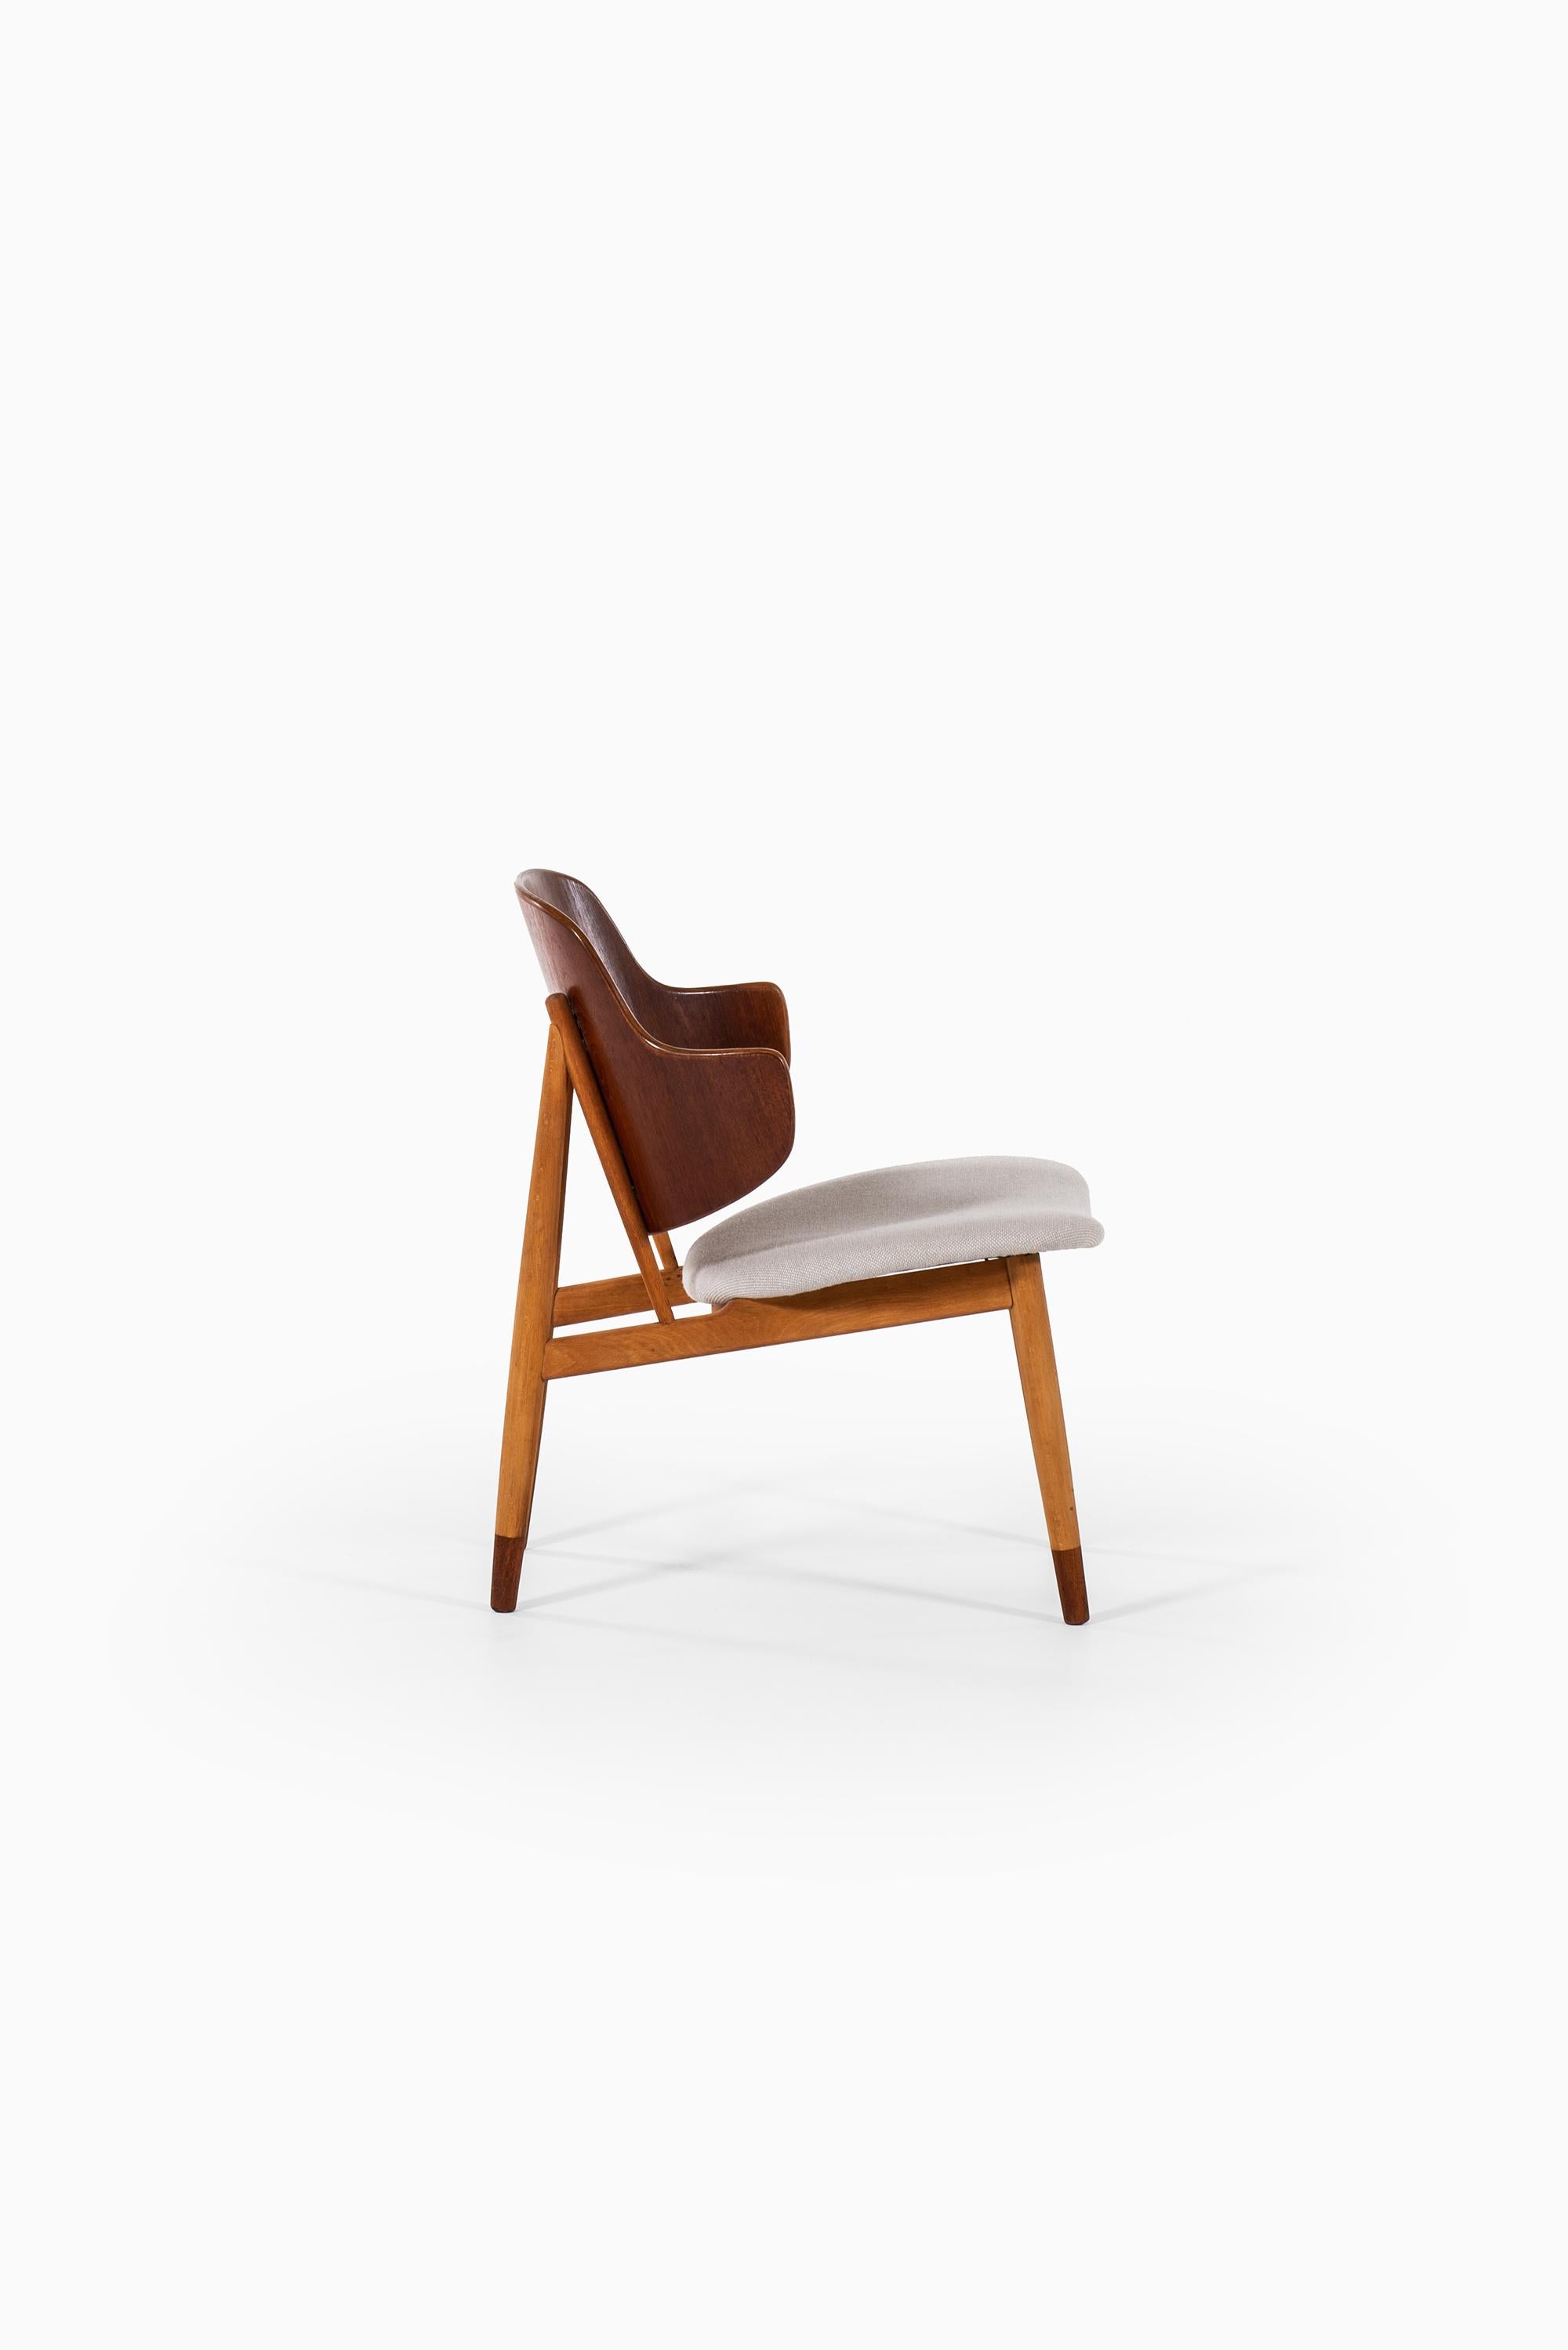 Danish Ib Kofod-Larsen Shell Easy Chair Produced by Christensen & Larsen in Denmark